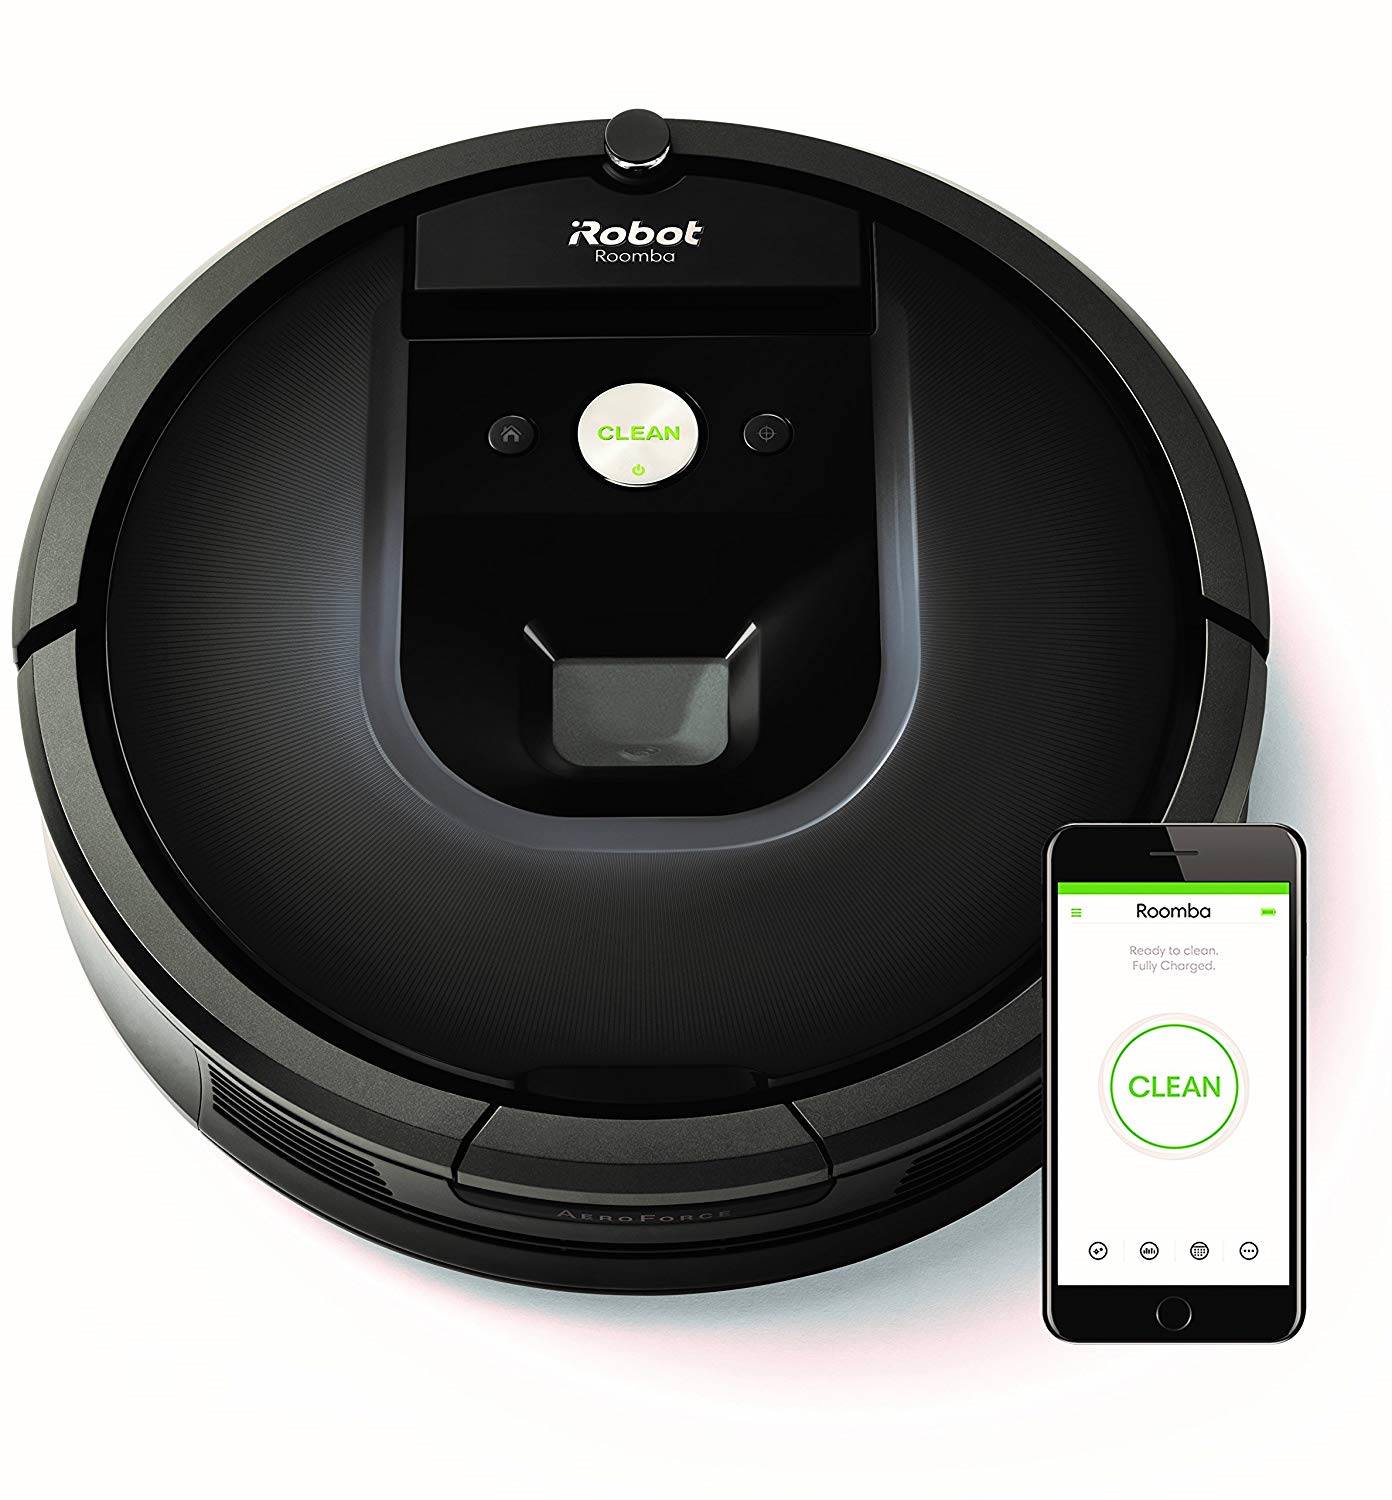 Roomba de iRobot: el aspirador por el que todos suspiran